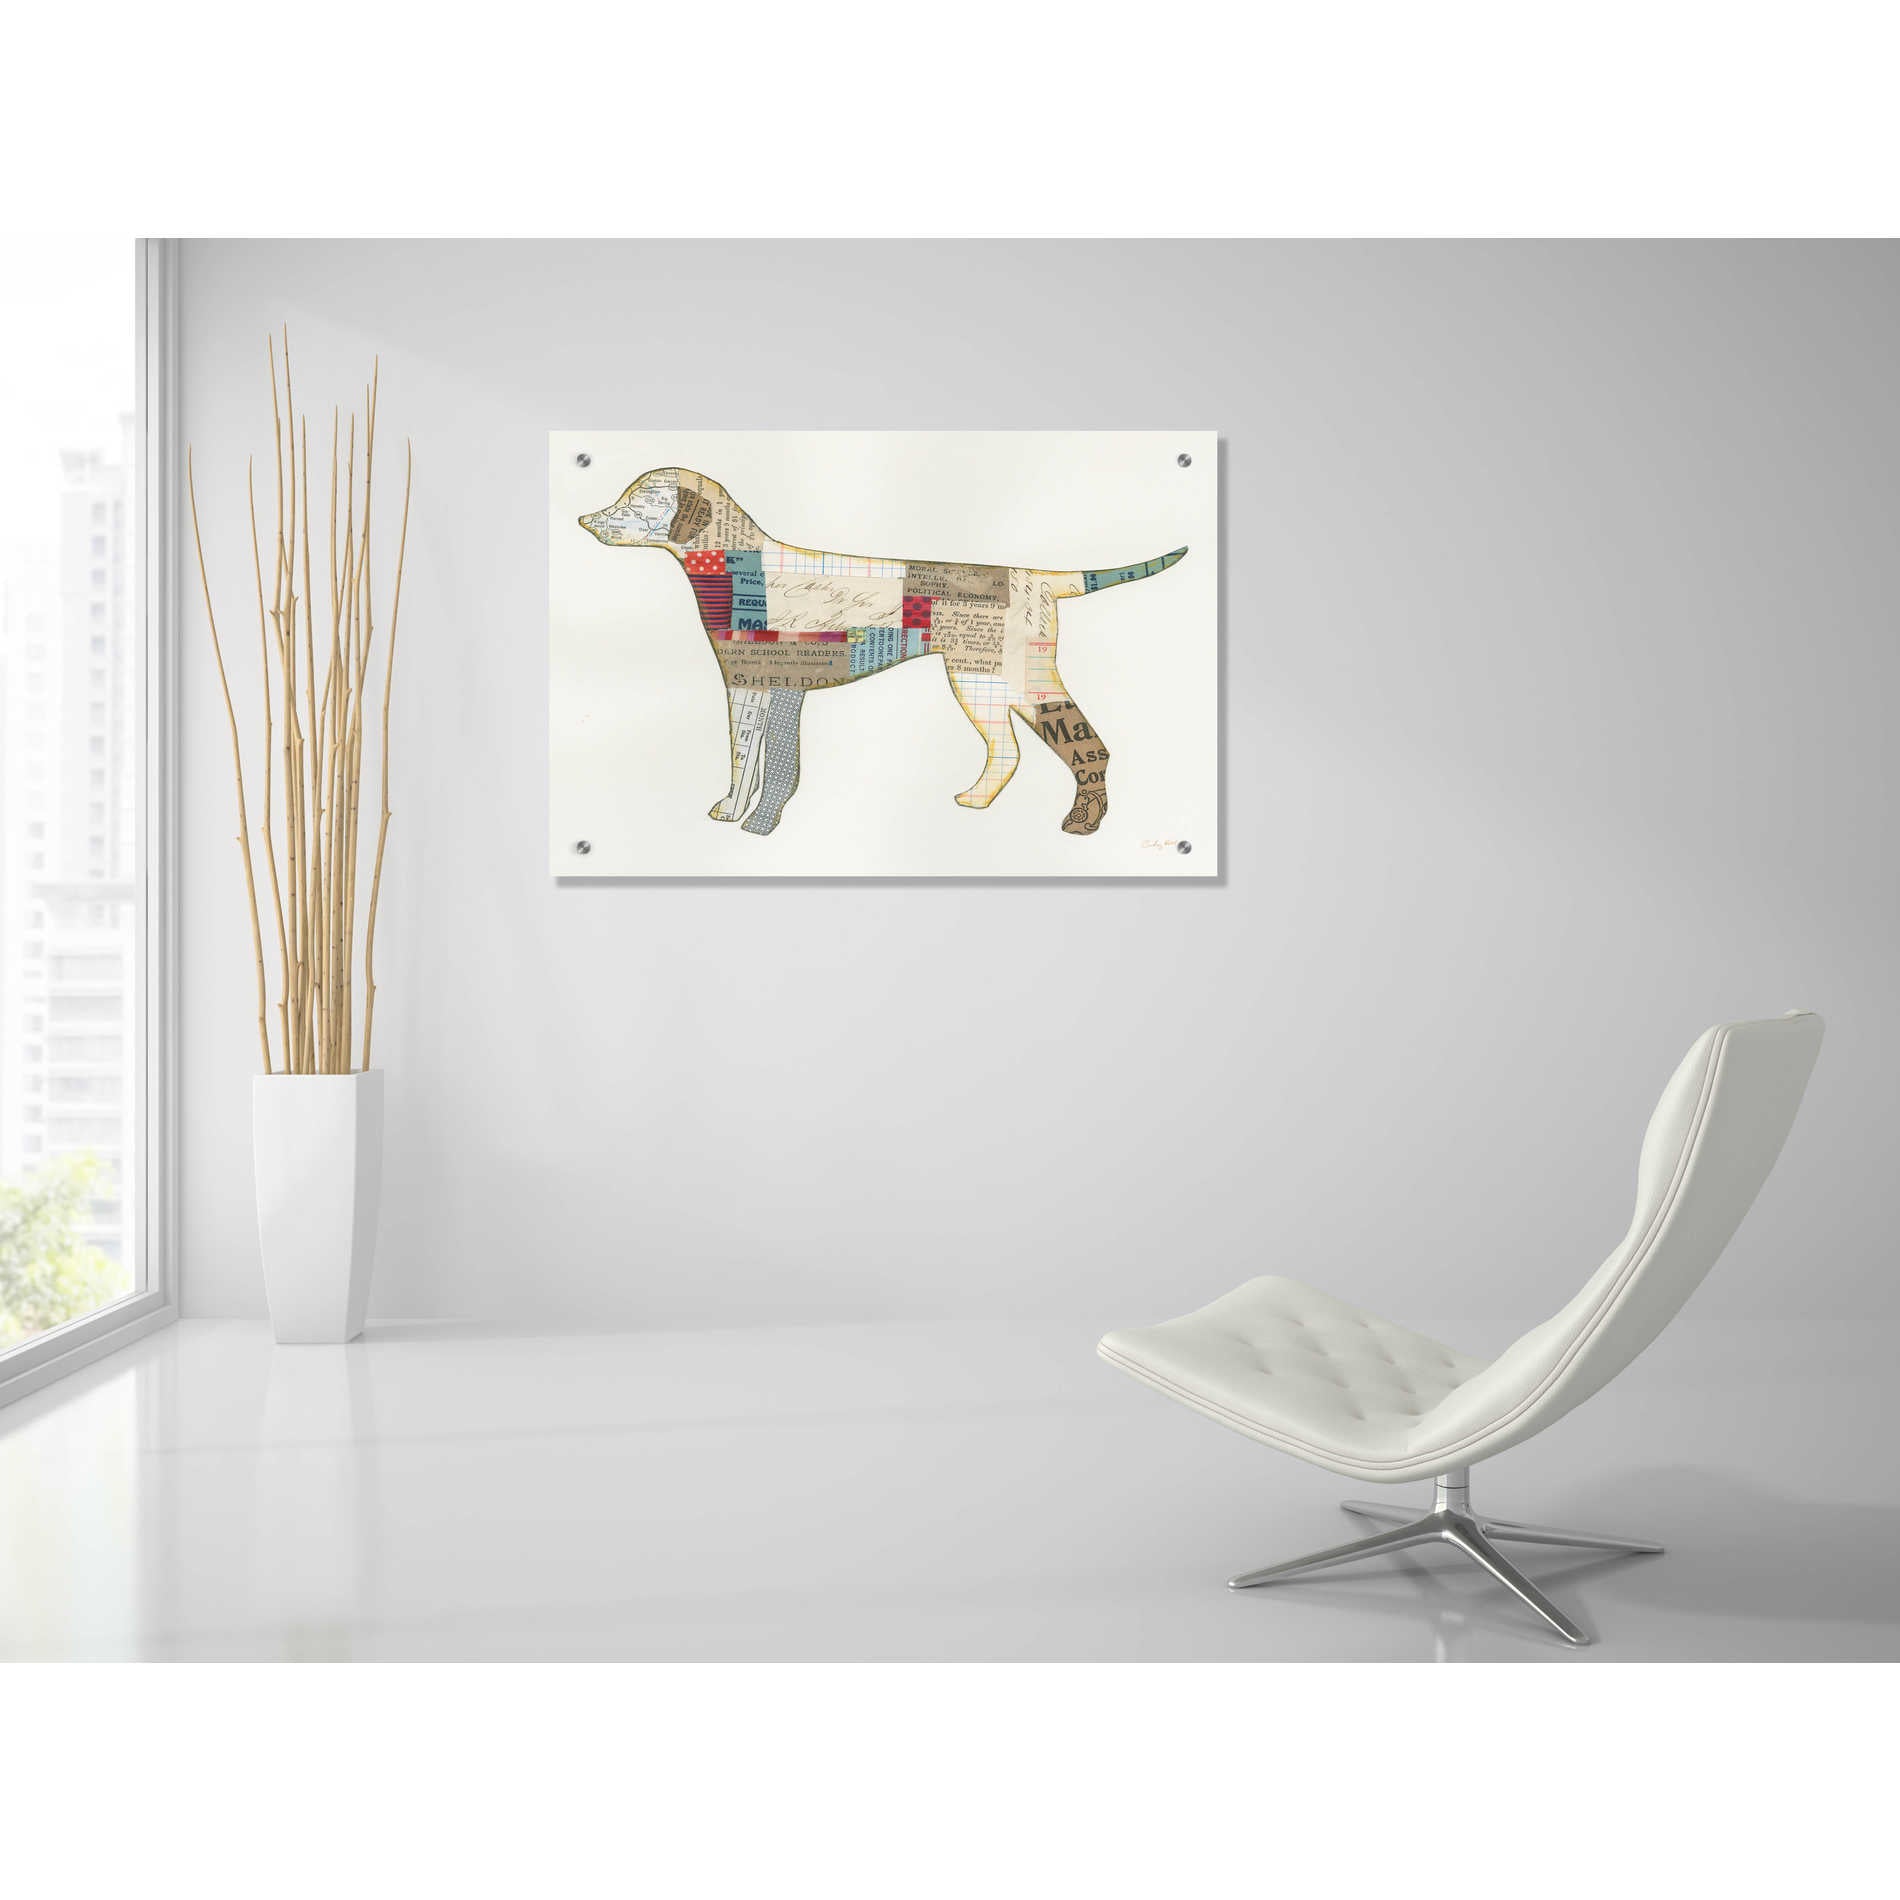 Epic Art 'Good Dog II' by Courtney Prahl, Acrylic Glass Wall Art,36x24